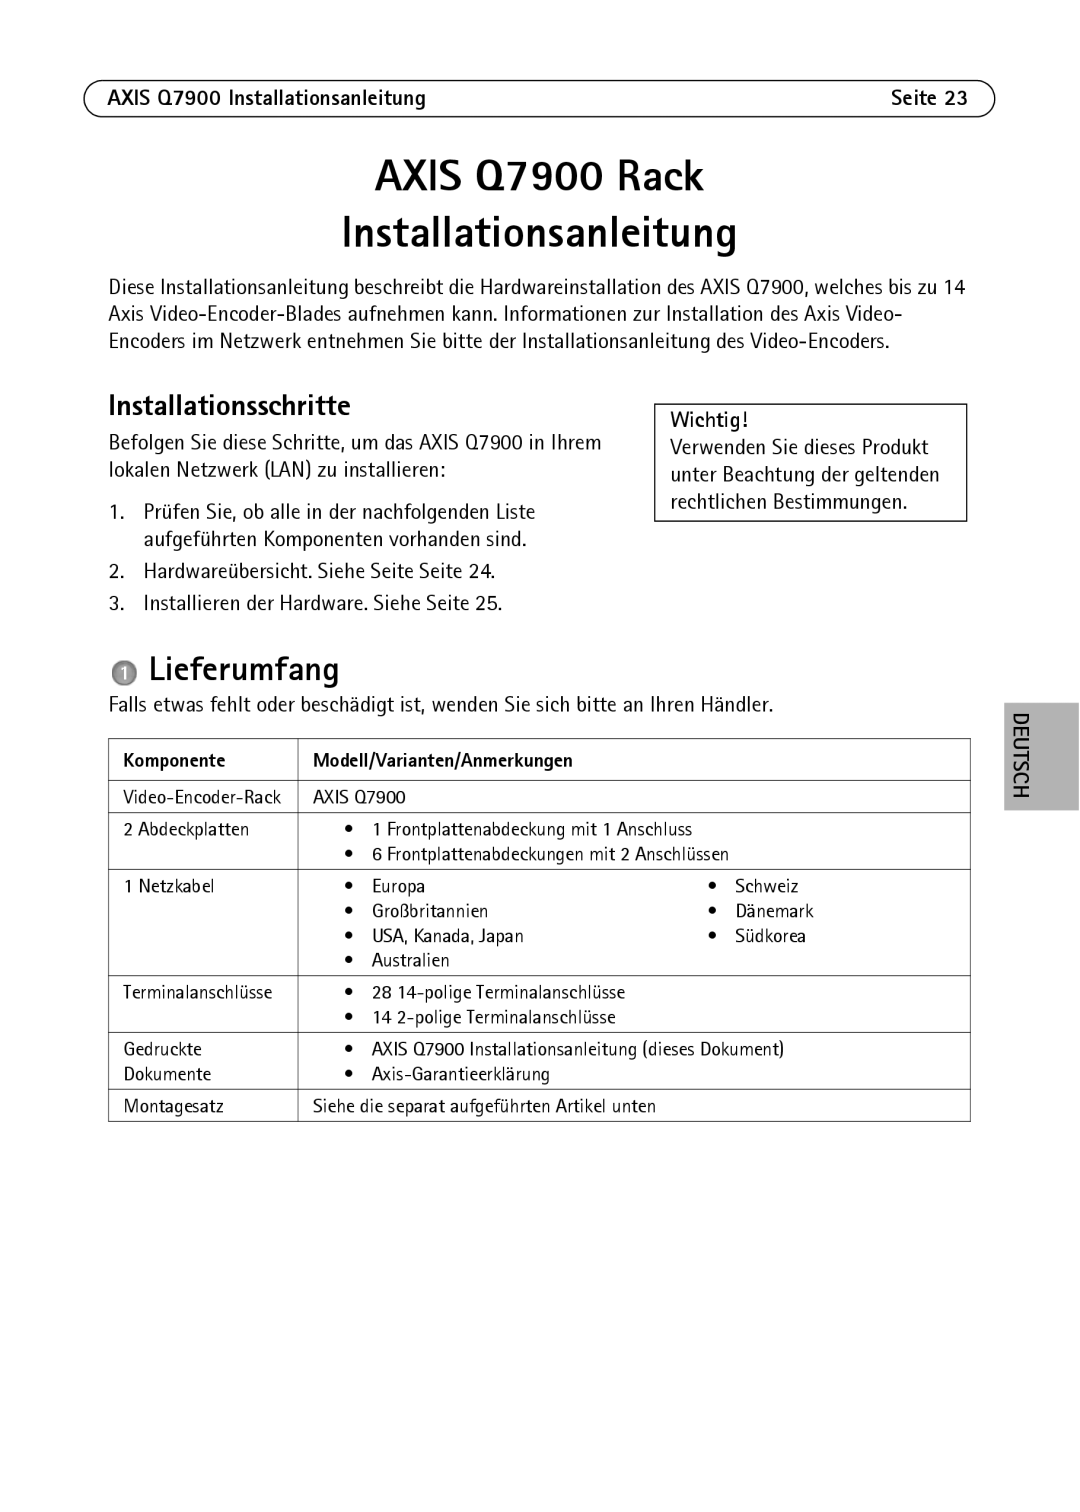 Axis Communications AXIS Q7900 Rack manual Lieferumfang, Installationsschritte, Komponente Modell/Varianten/Anmerkungen 